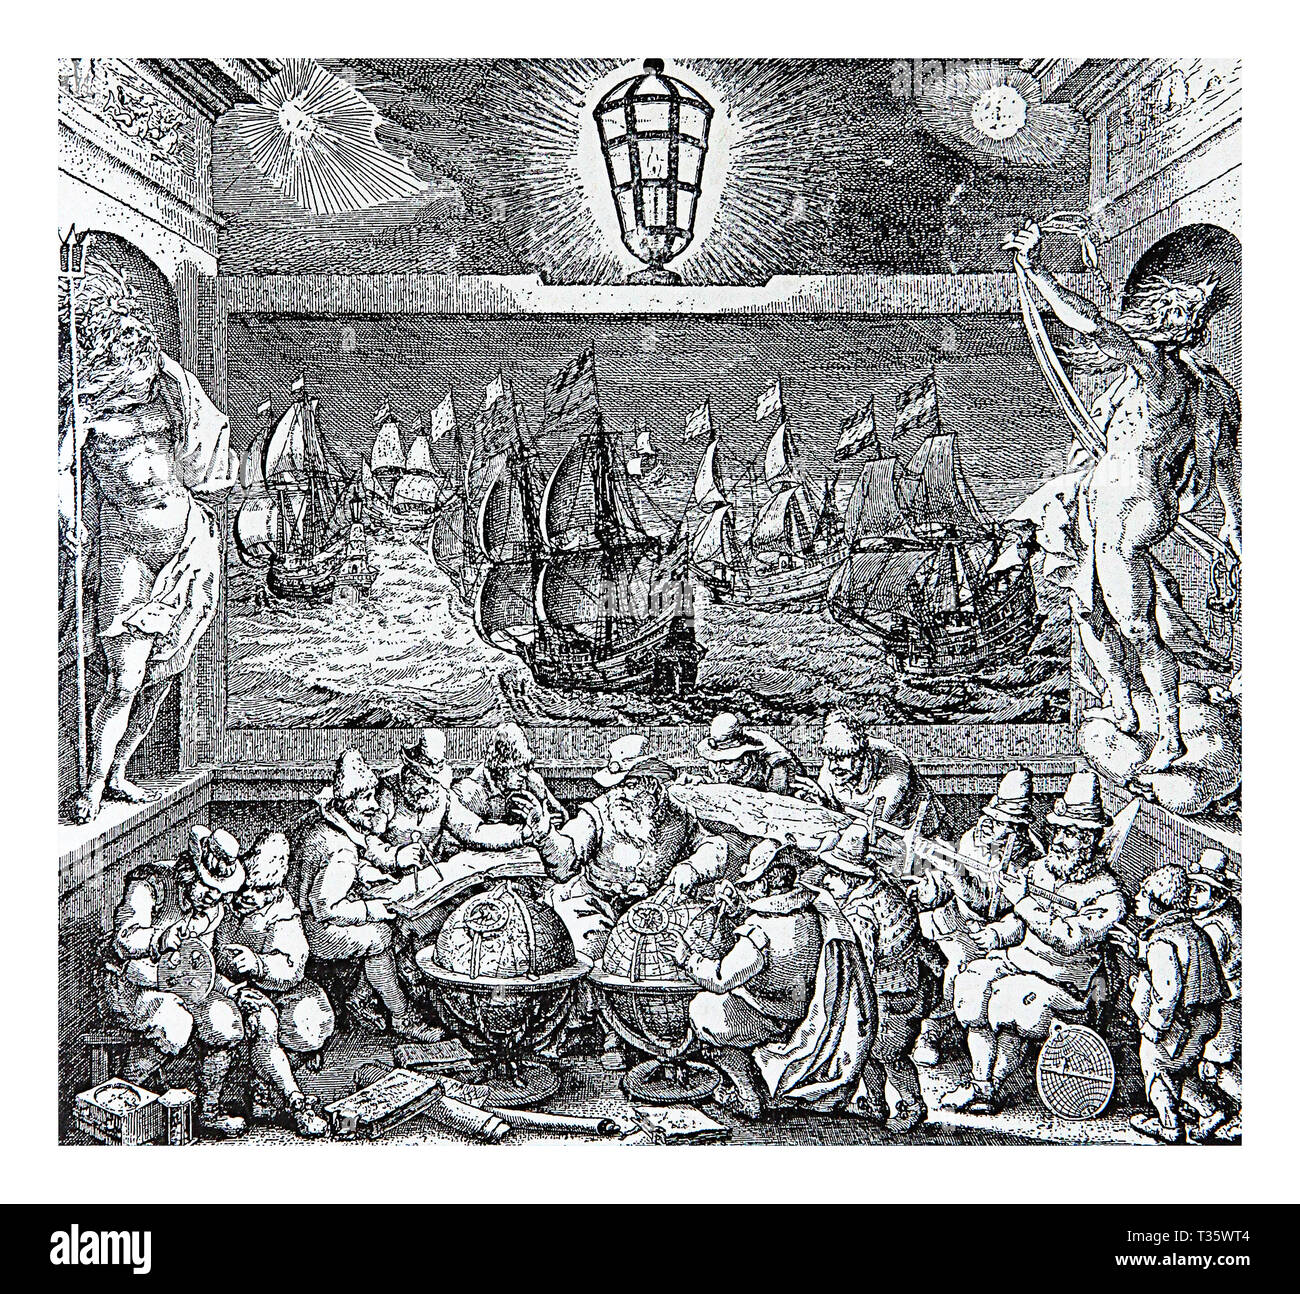 Dans le XVII siècle l'économie néerlandaise était extrêmement puissante : les commerçants hollandais étaient en voyage avec leurs navires à travers toutes les mers à apporté toutes sortes de marchandises dans les rues d'Amsterdam Banque D'Images